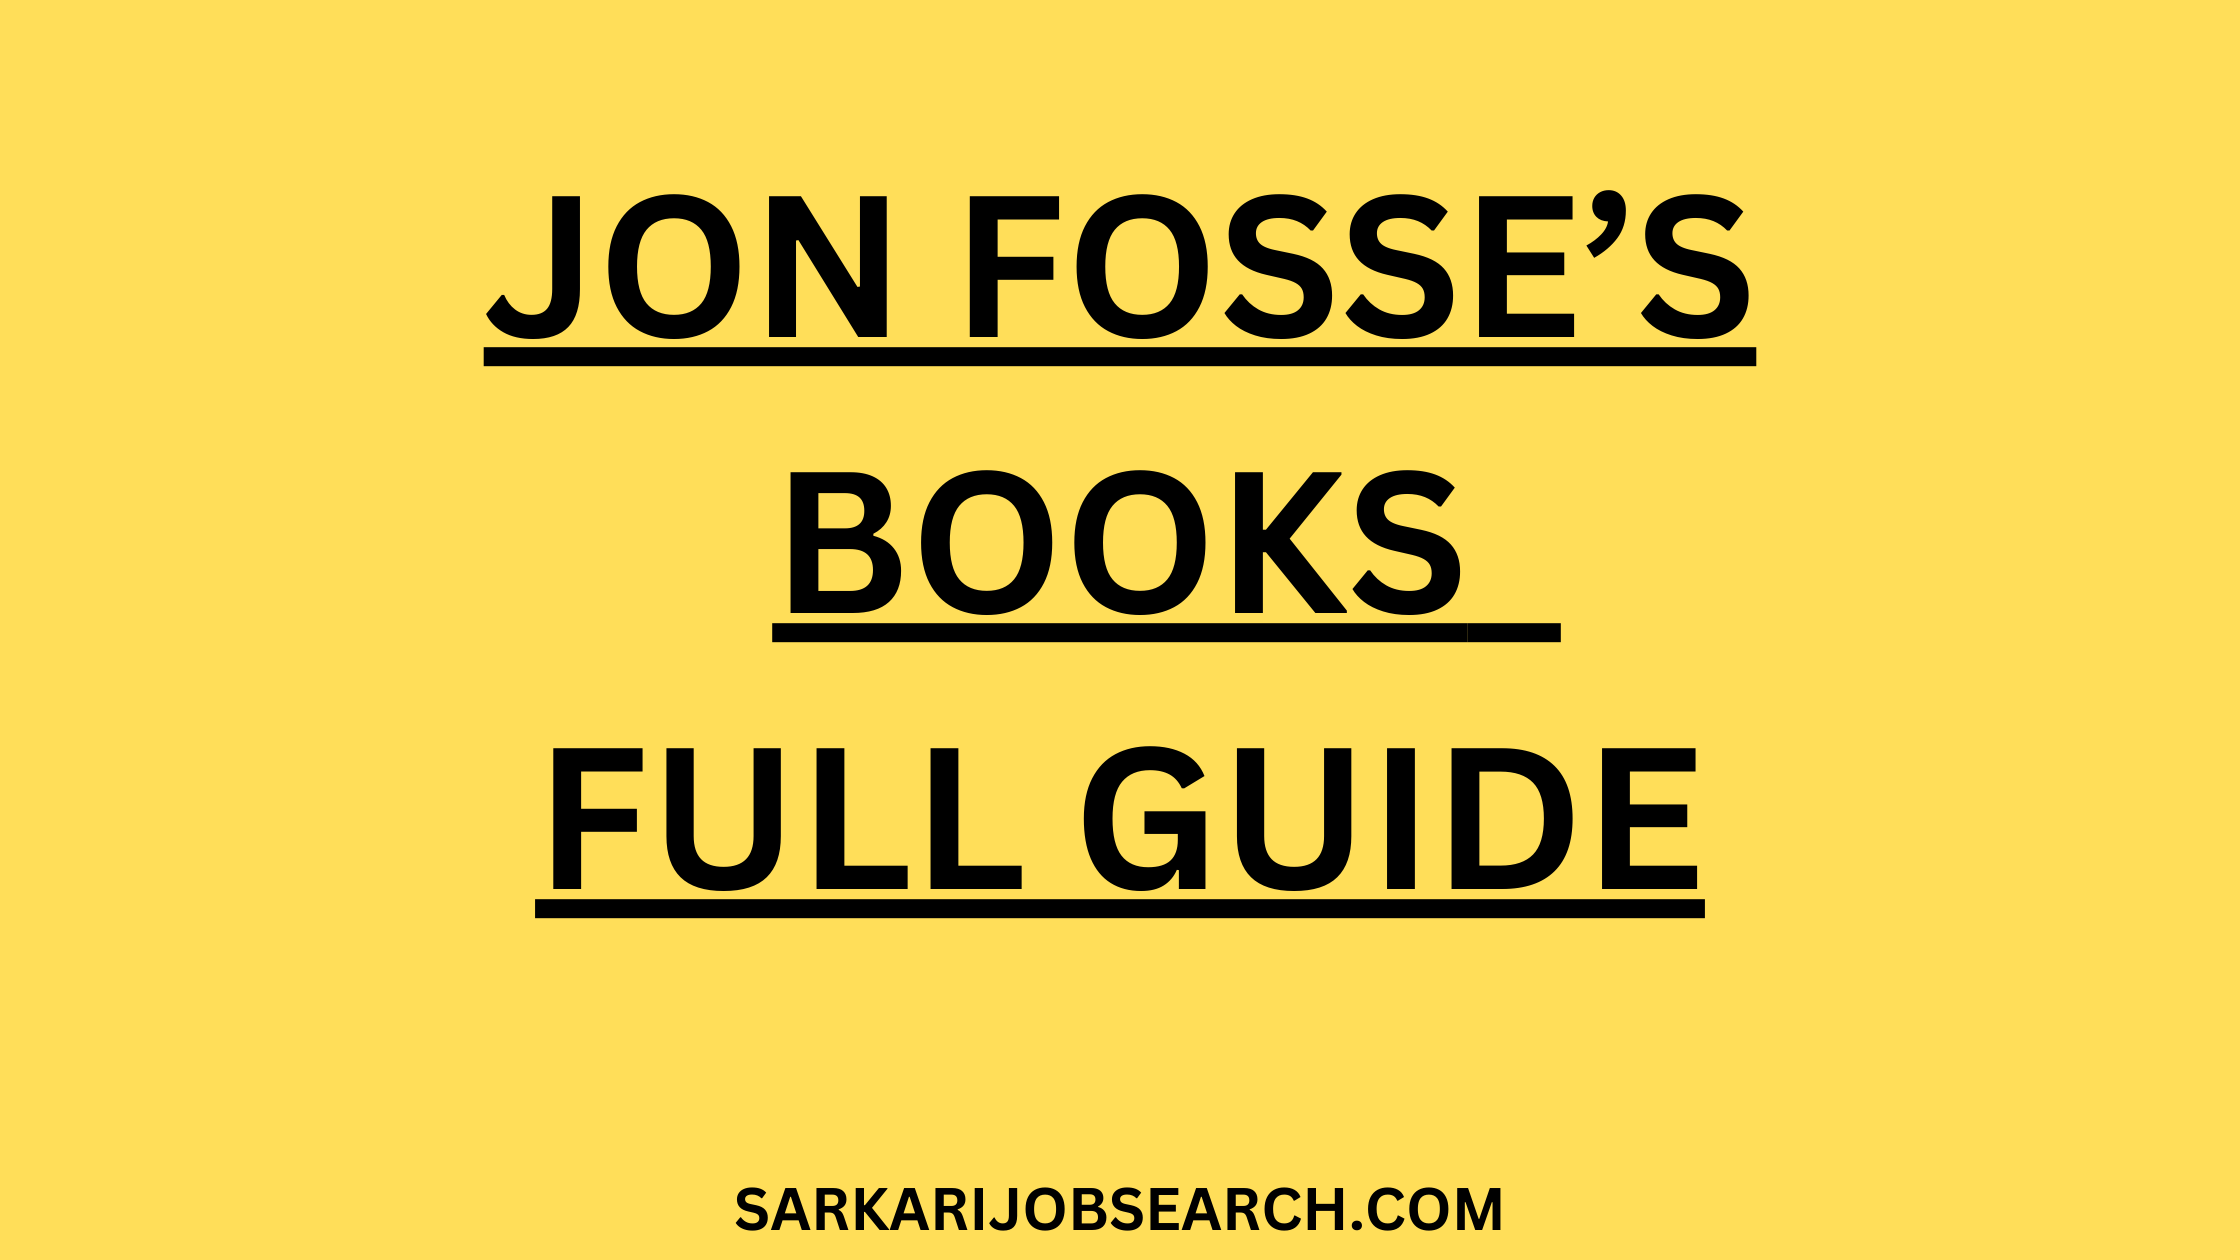 Jon Fosse’s Books | Full Guide